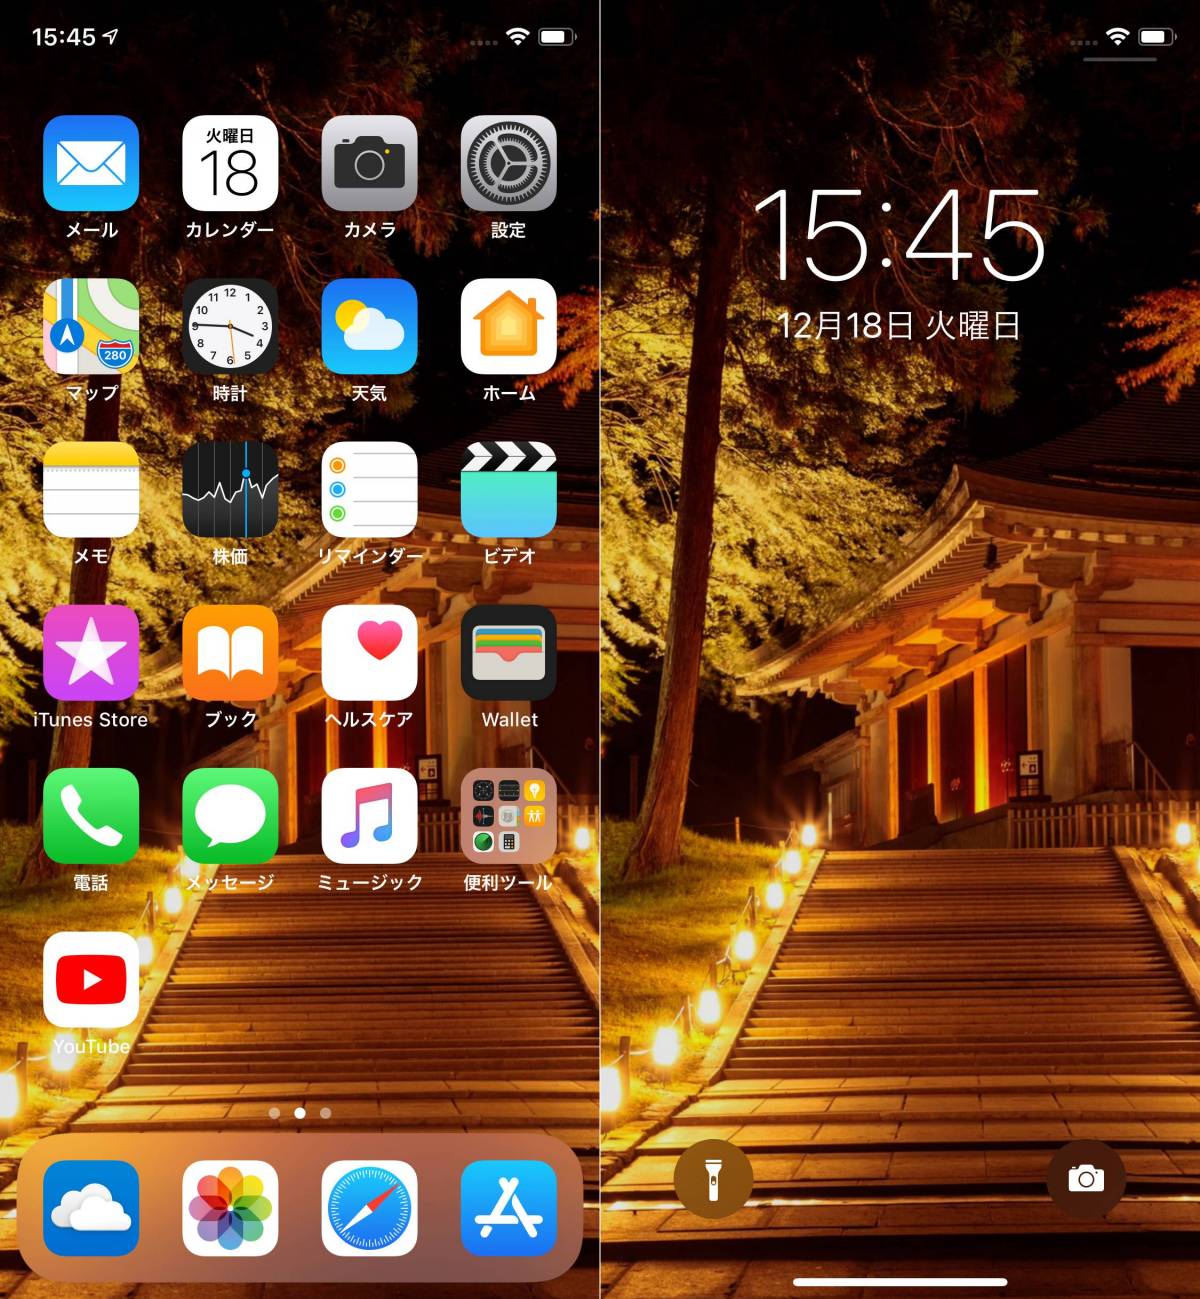 Iphoneのロック画面 ホーム画面の壁紙を変更する方法の画像 9枚目 Appliv Topics